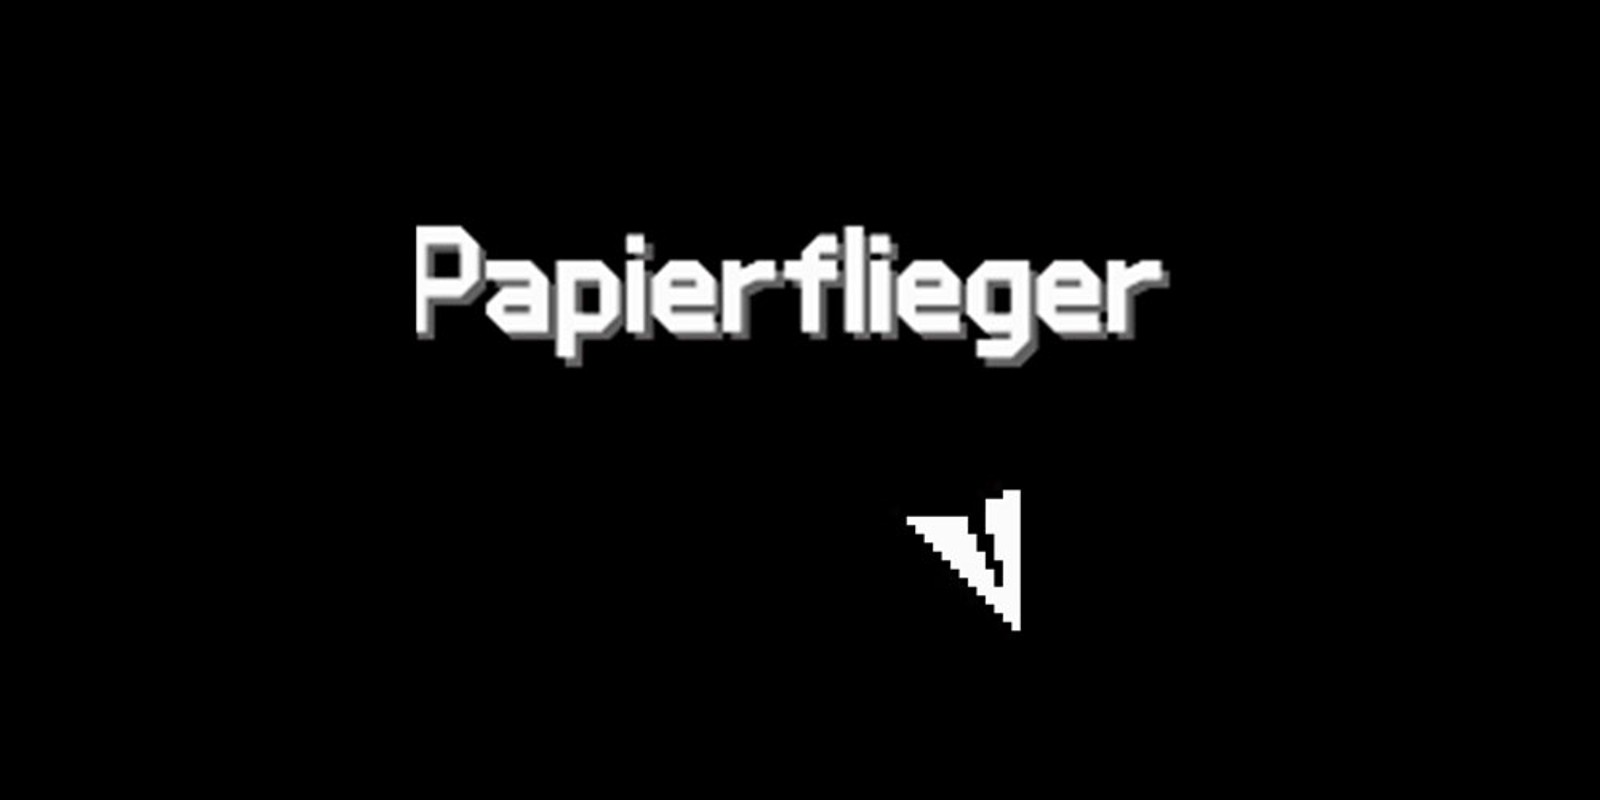 Papierflieger